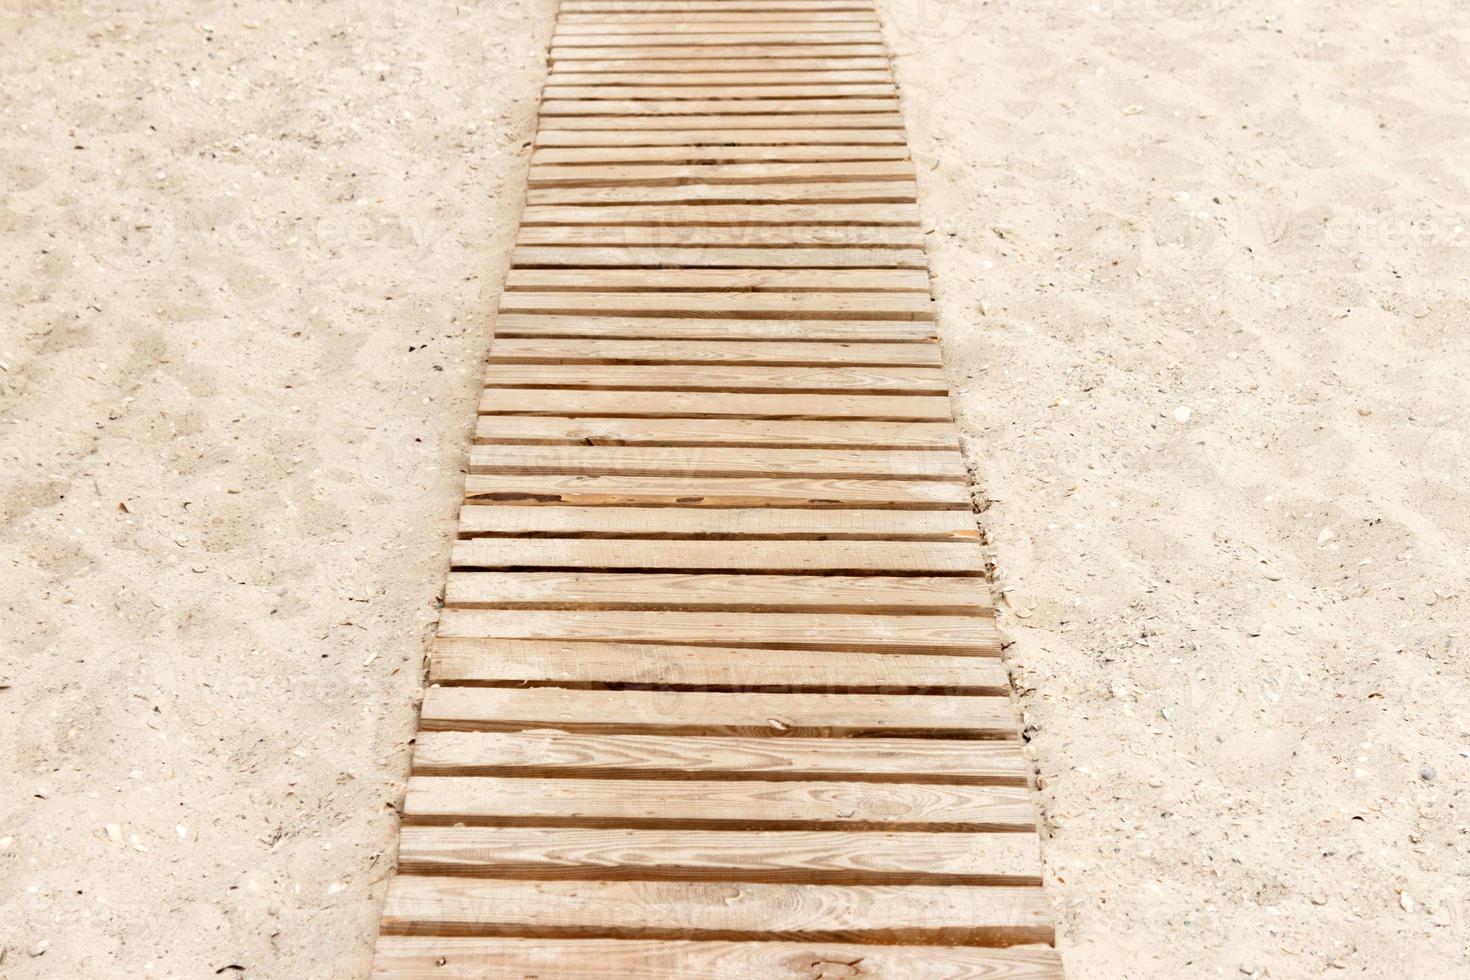 trä- strand promenaden med sand för bakgrund foto